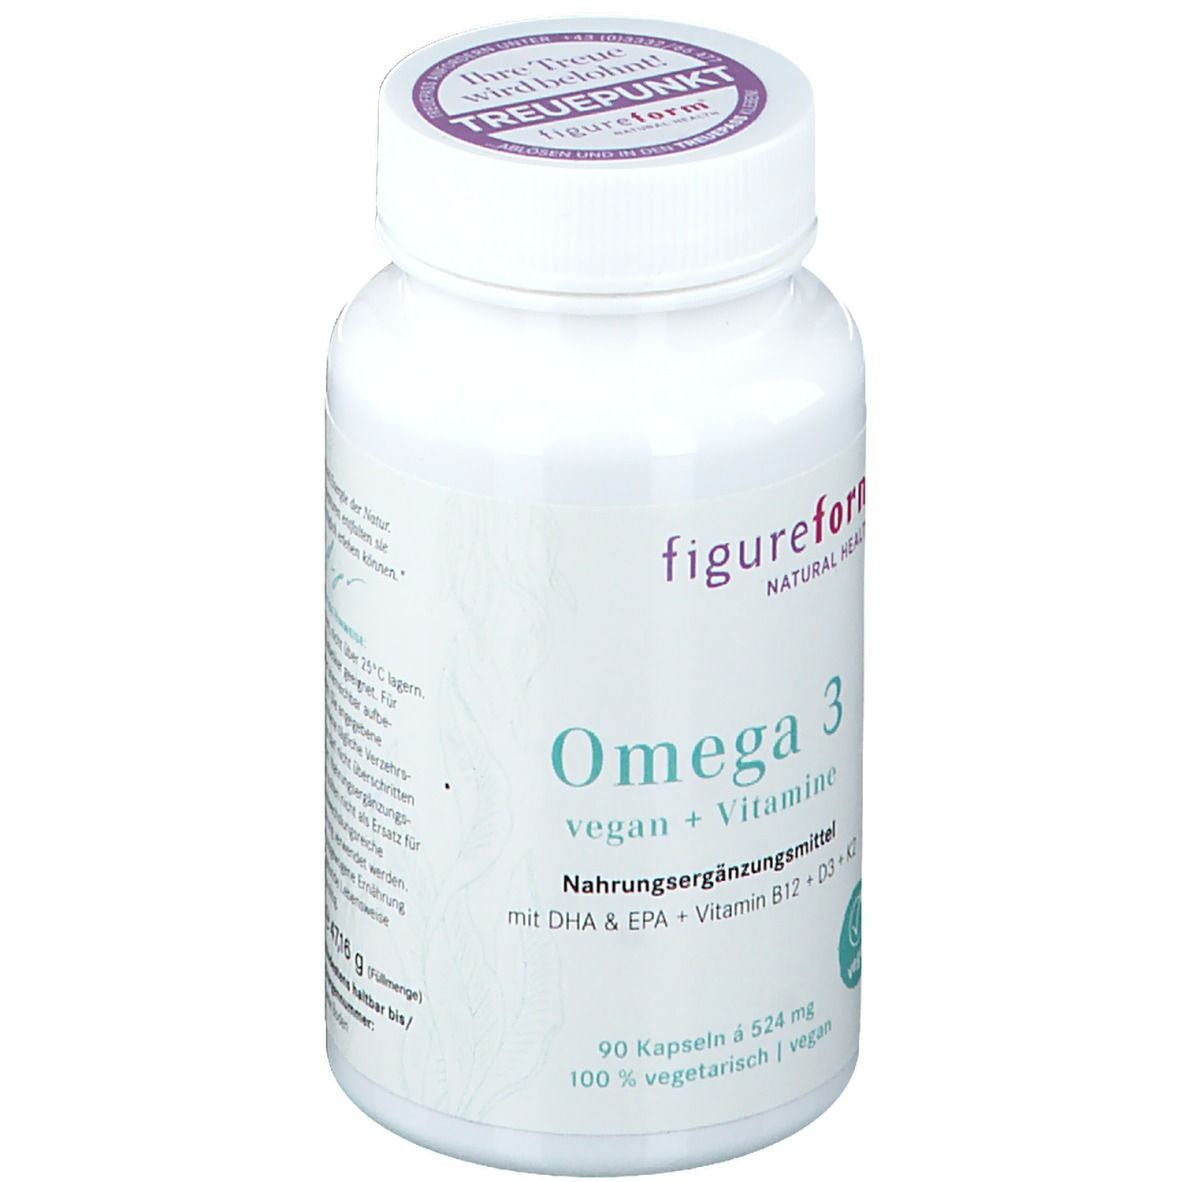 Omega 3 vegan + Vitamine